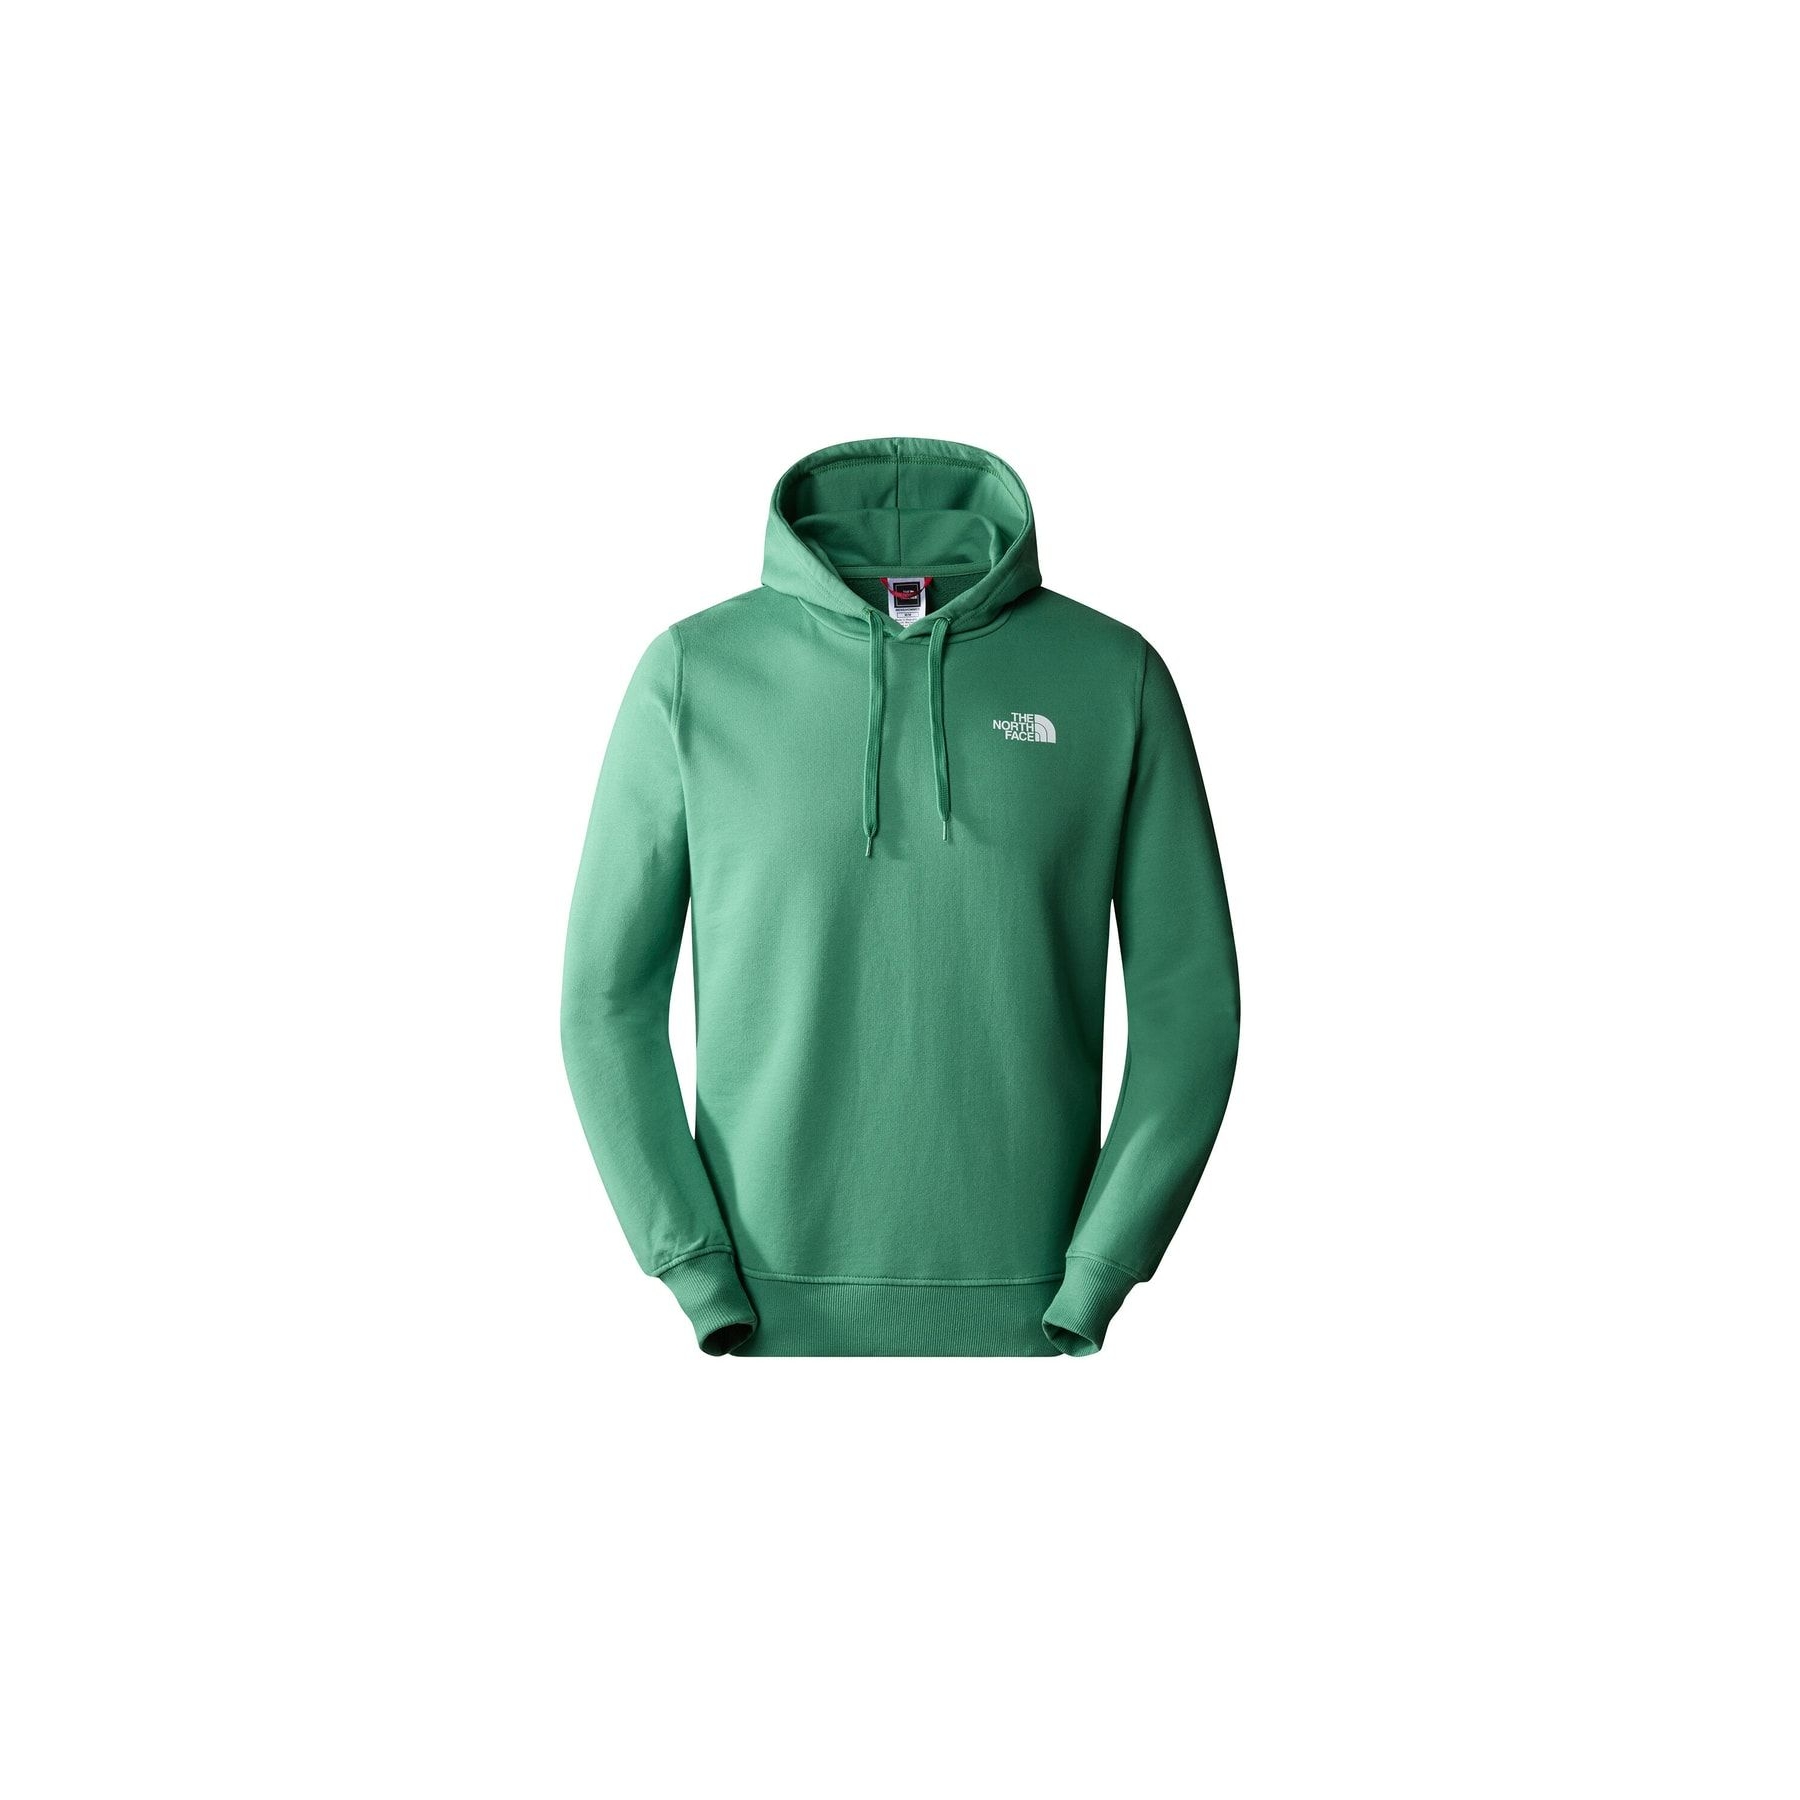 The North Face Seasonal Drew Peak Yeşil Sweatshirt (NF0A2S57N111)